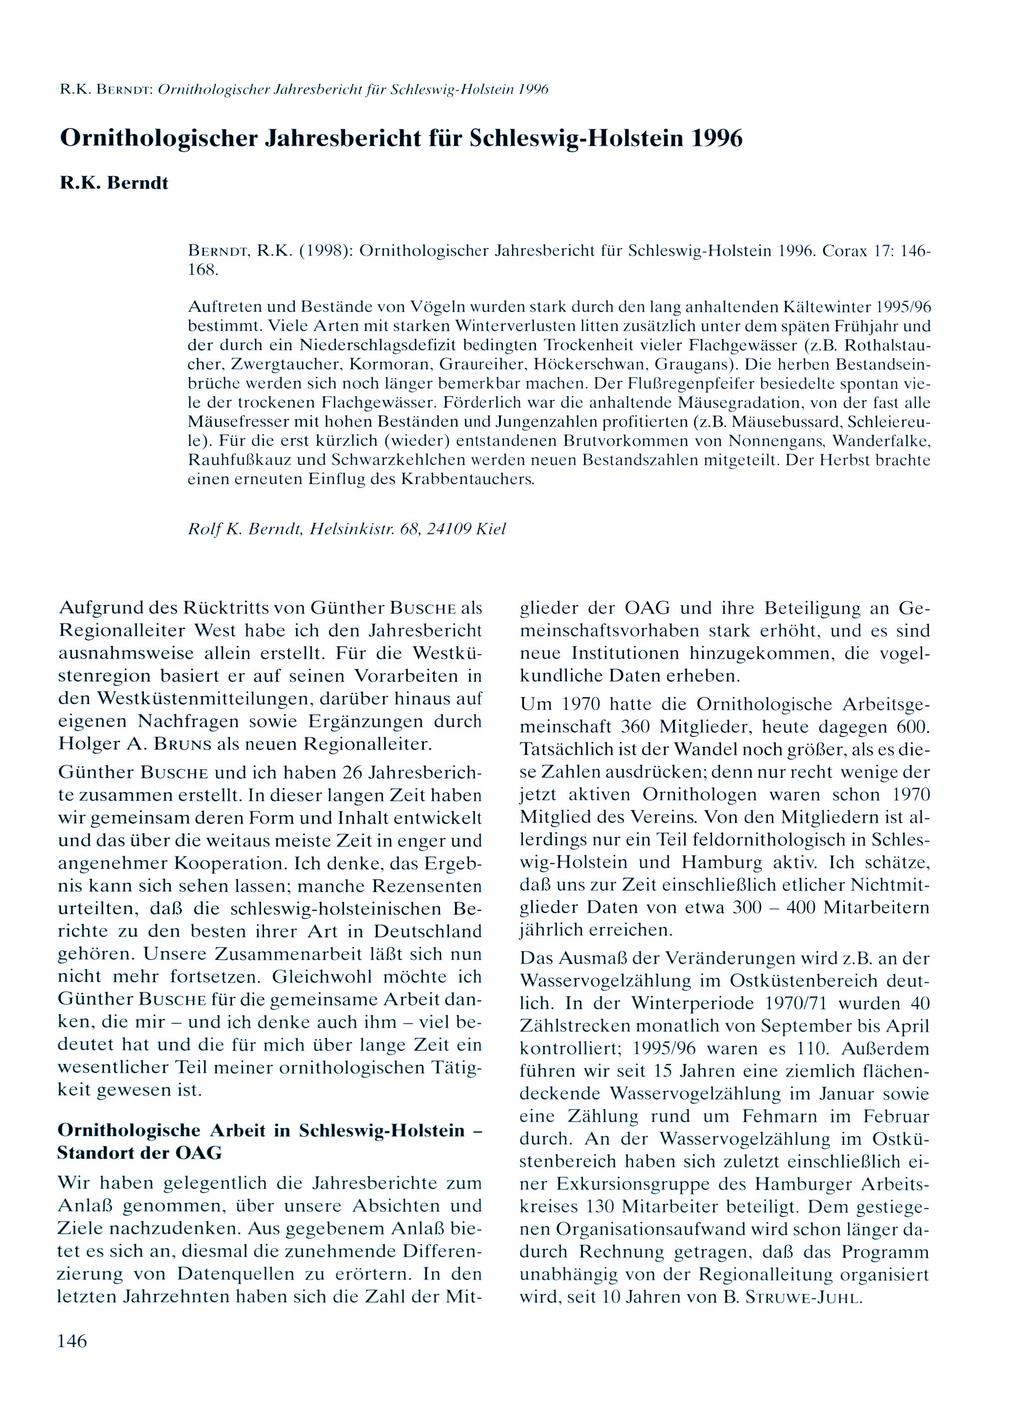 R.K. BERNDT: Ornithologischer Jahresbericht für Schleswig-Holstein 1996 Ornithologischer Jahresbericht für Schleswig-Holstein 1996 R.K. Berndt BERNDT, R.K. (1998): Ornithologischer Jahresbericht für Schleswig-Holstein 1996.